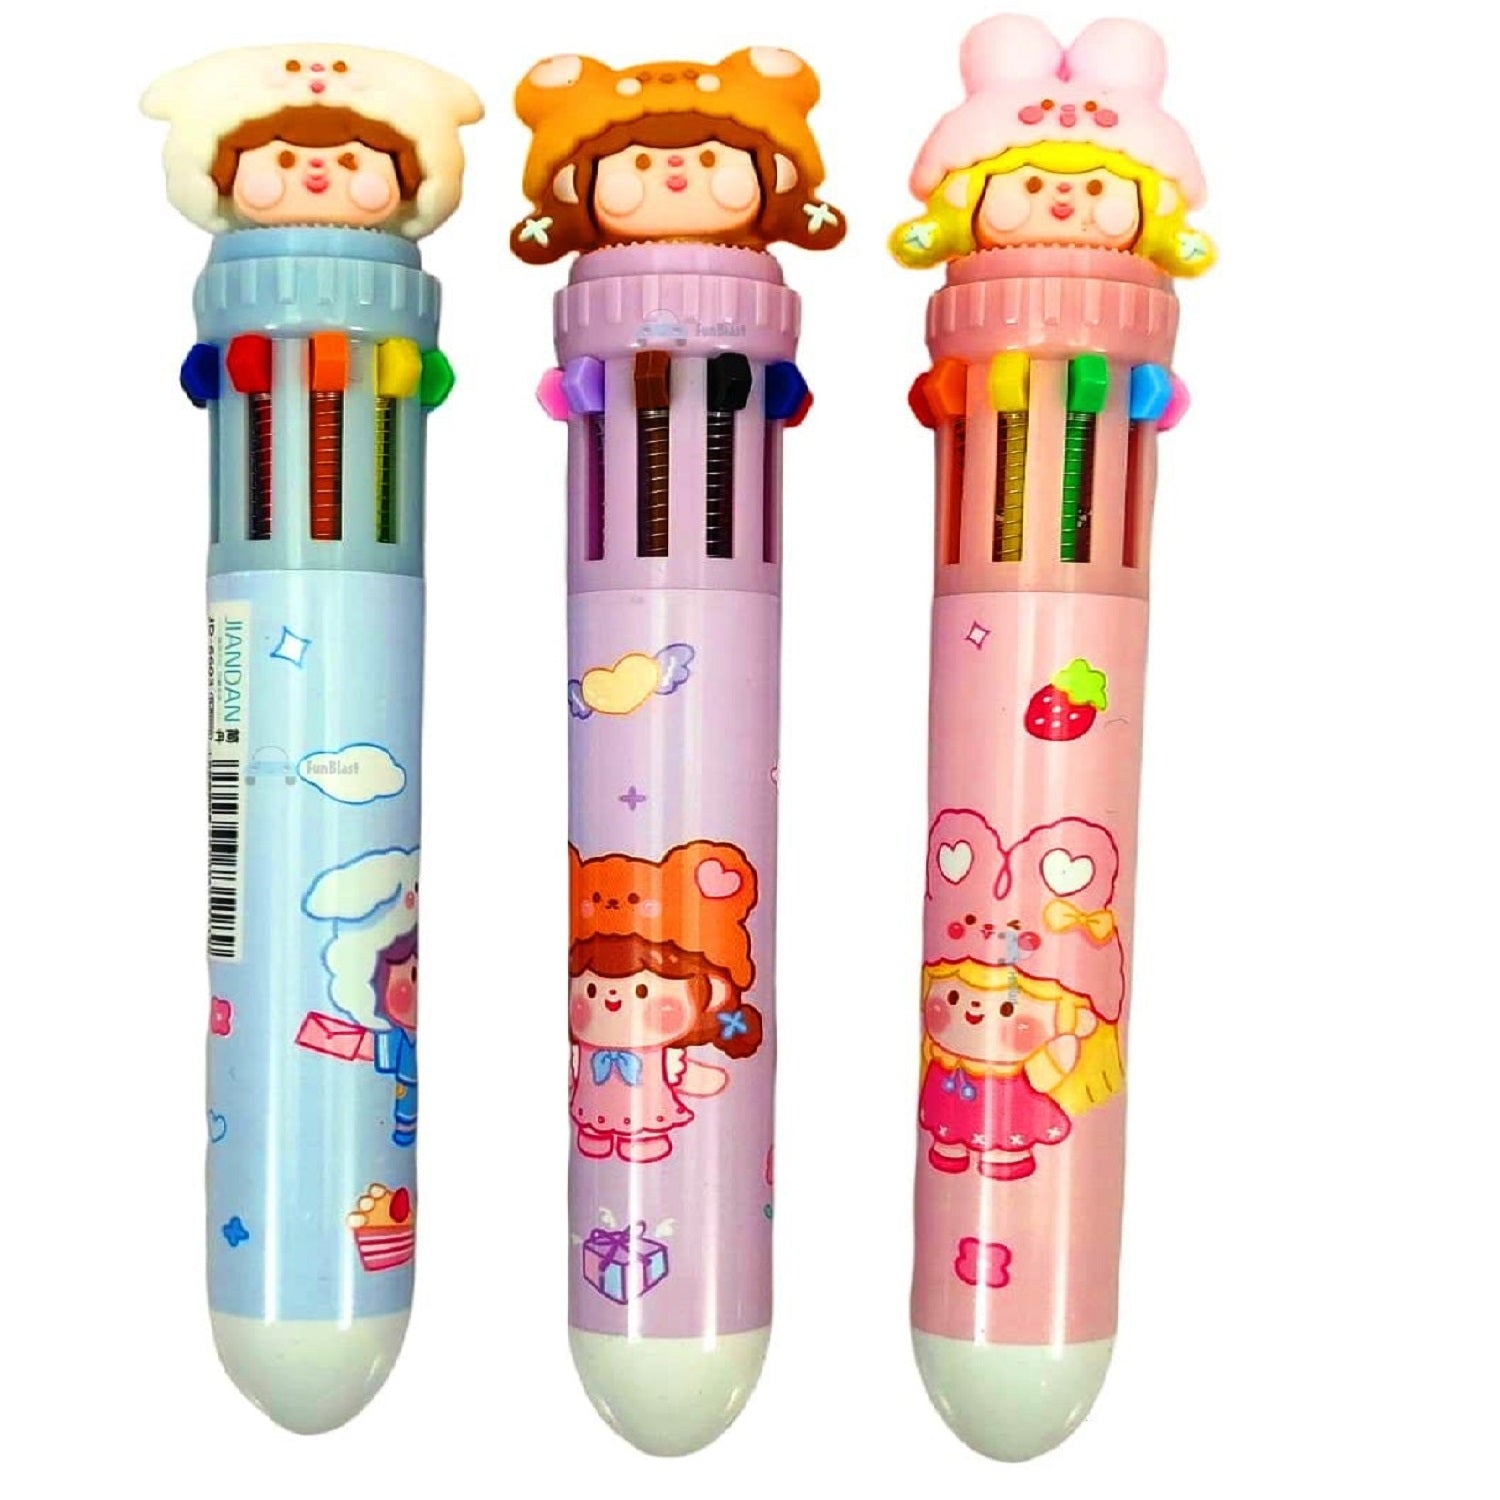 10 In 1 Pens For Kids Ball Pen Set For School & Office-Cartoon Pen For